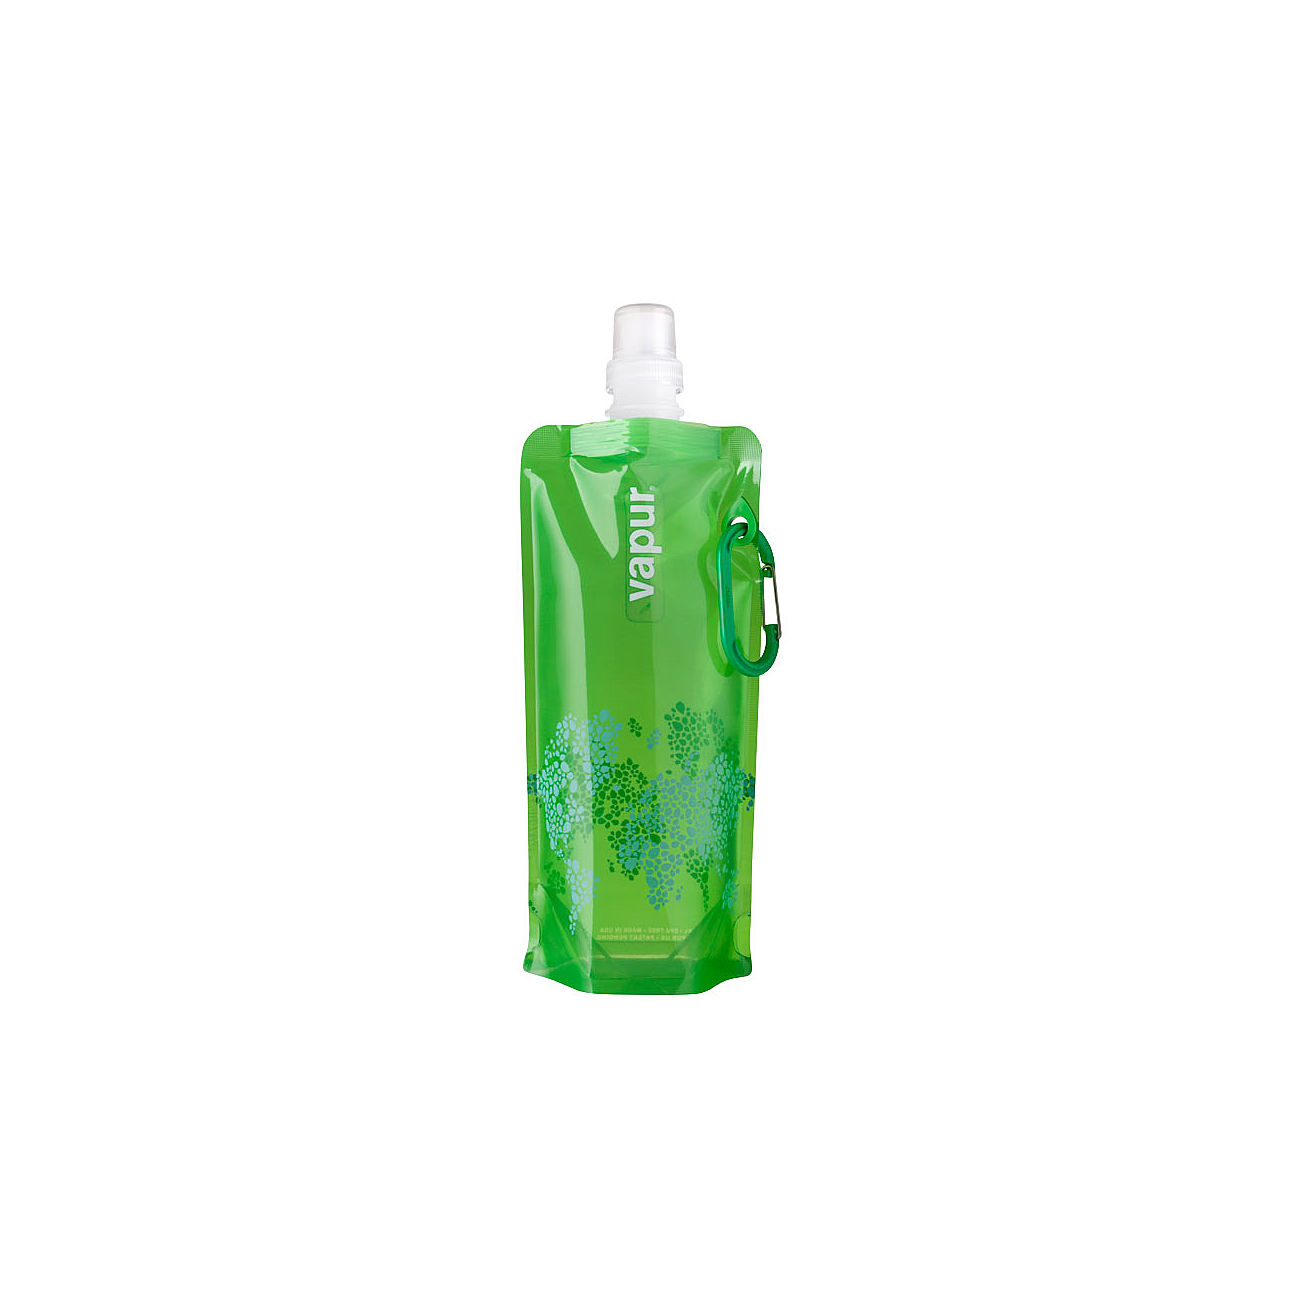 Vapur faltbare Trinkflasche Reflex 0,5 l grün kaufen